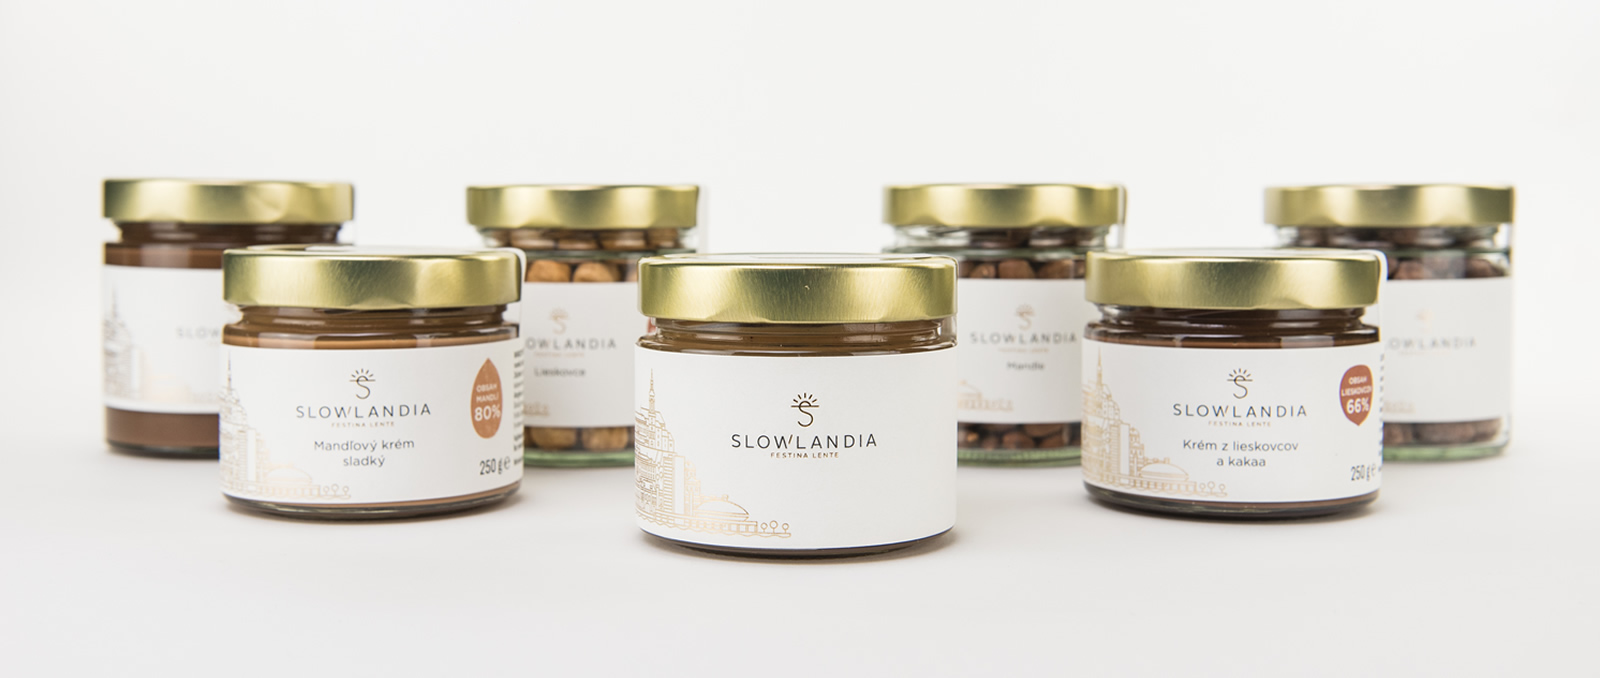 SLOWLANDIA_Products_group